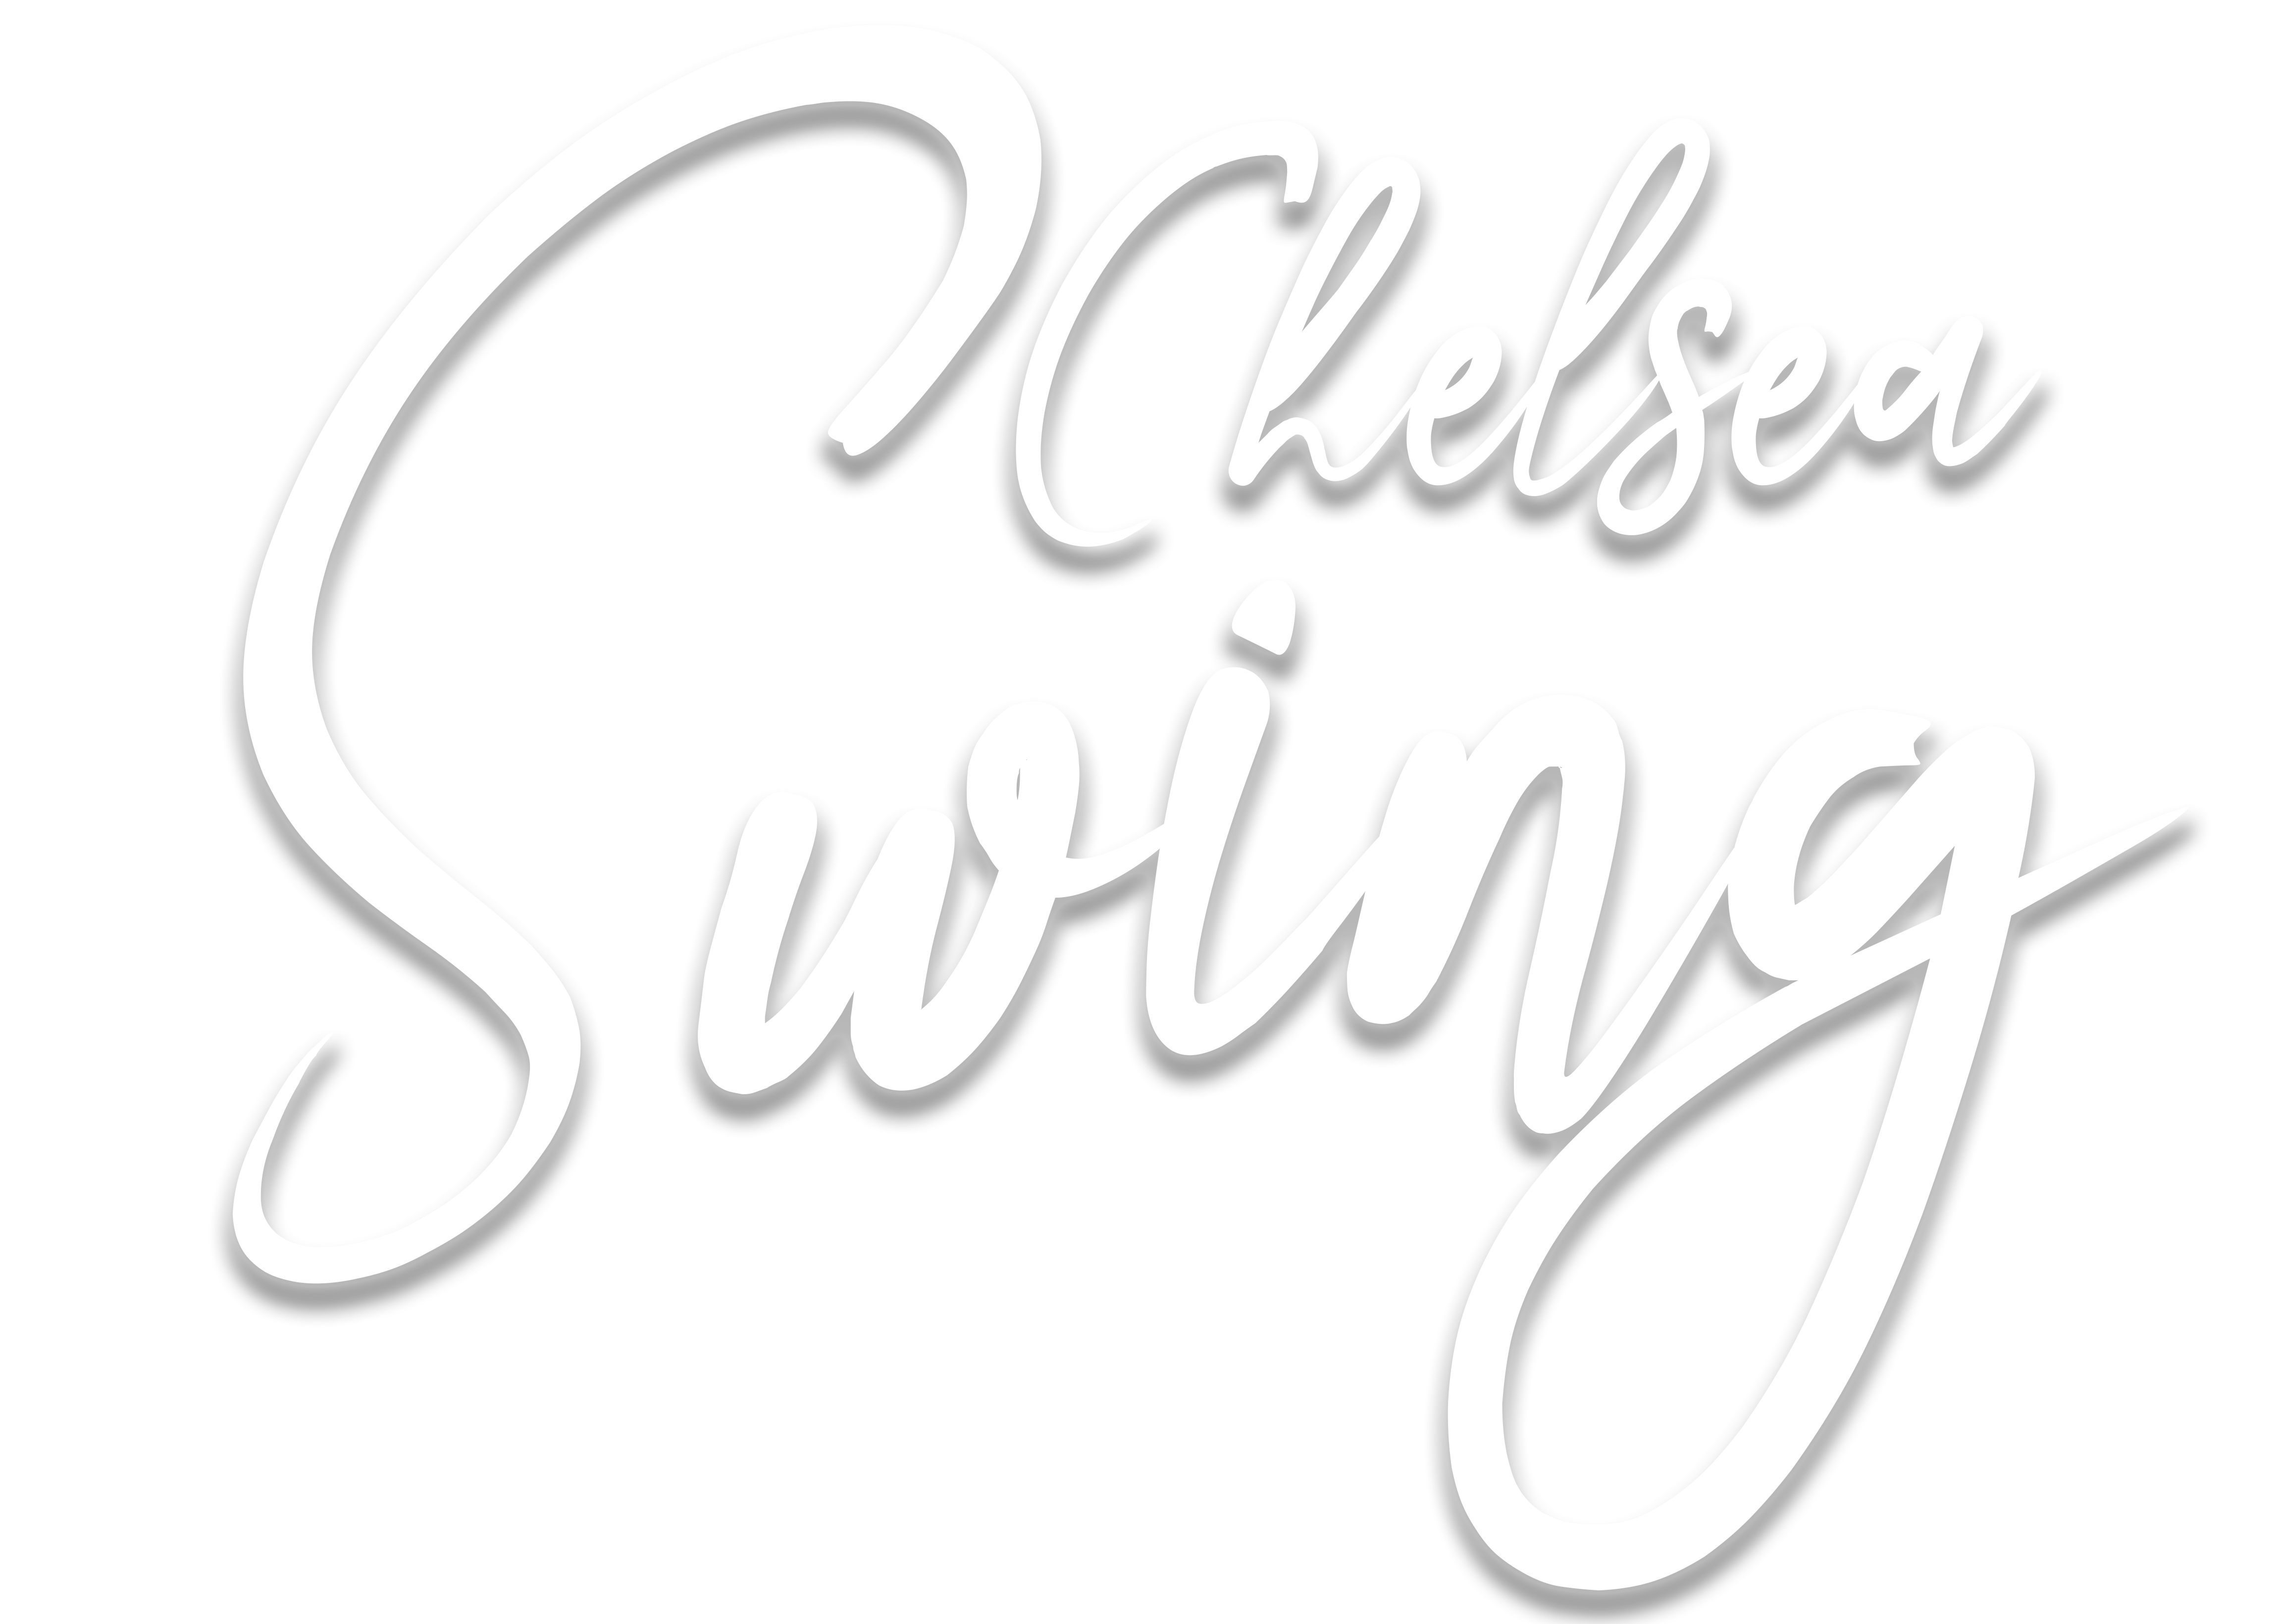 Chelsea Swing